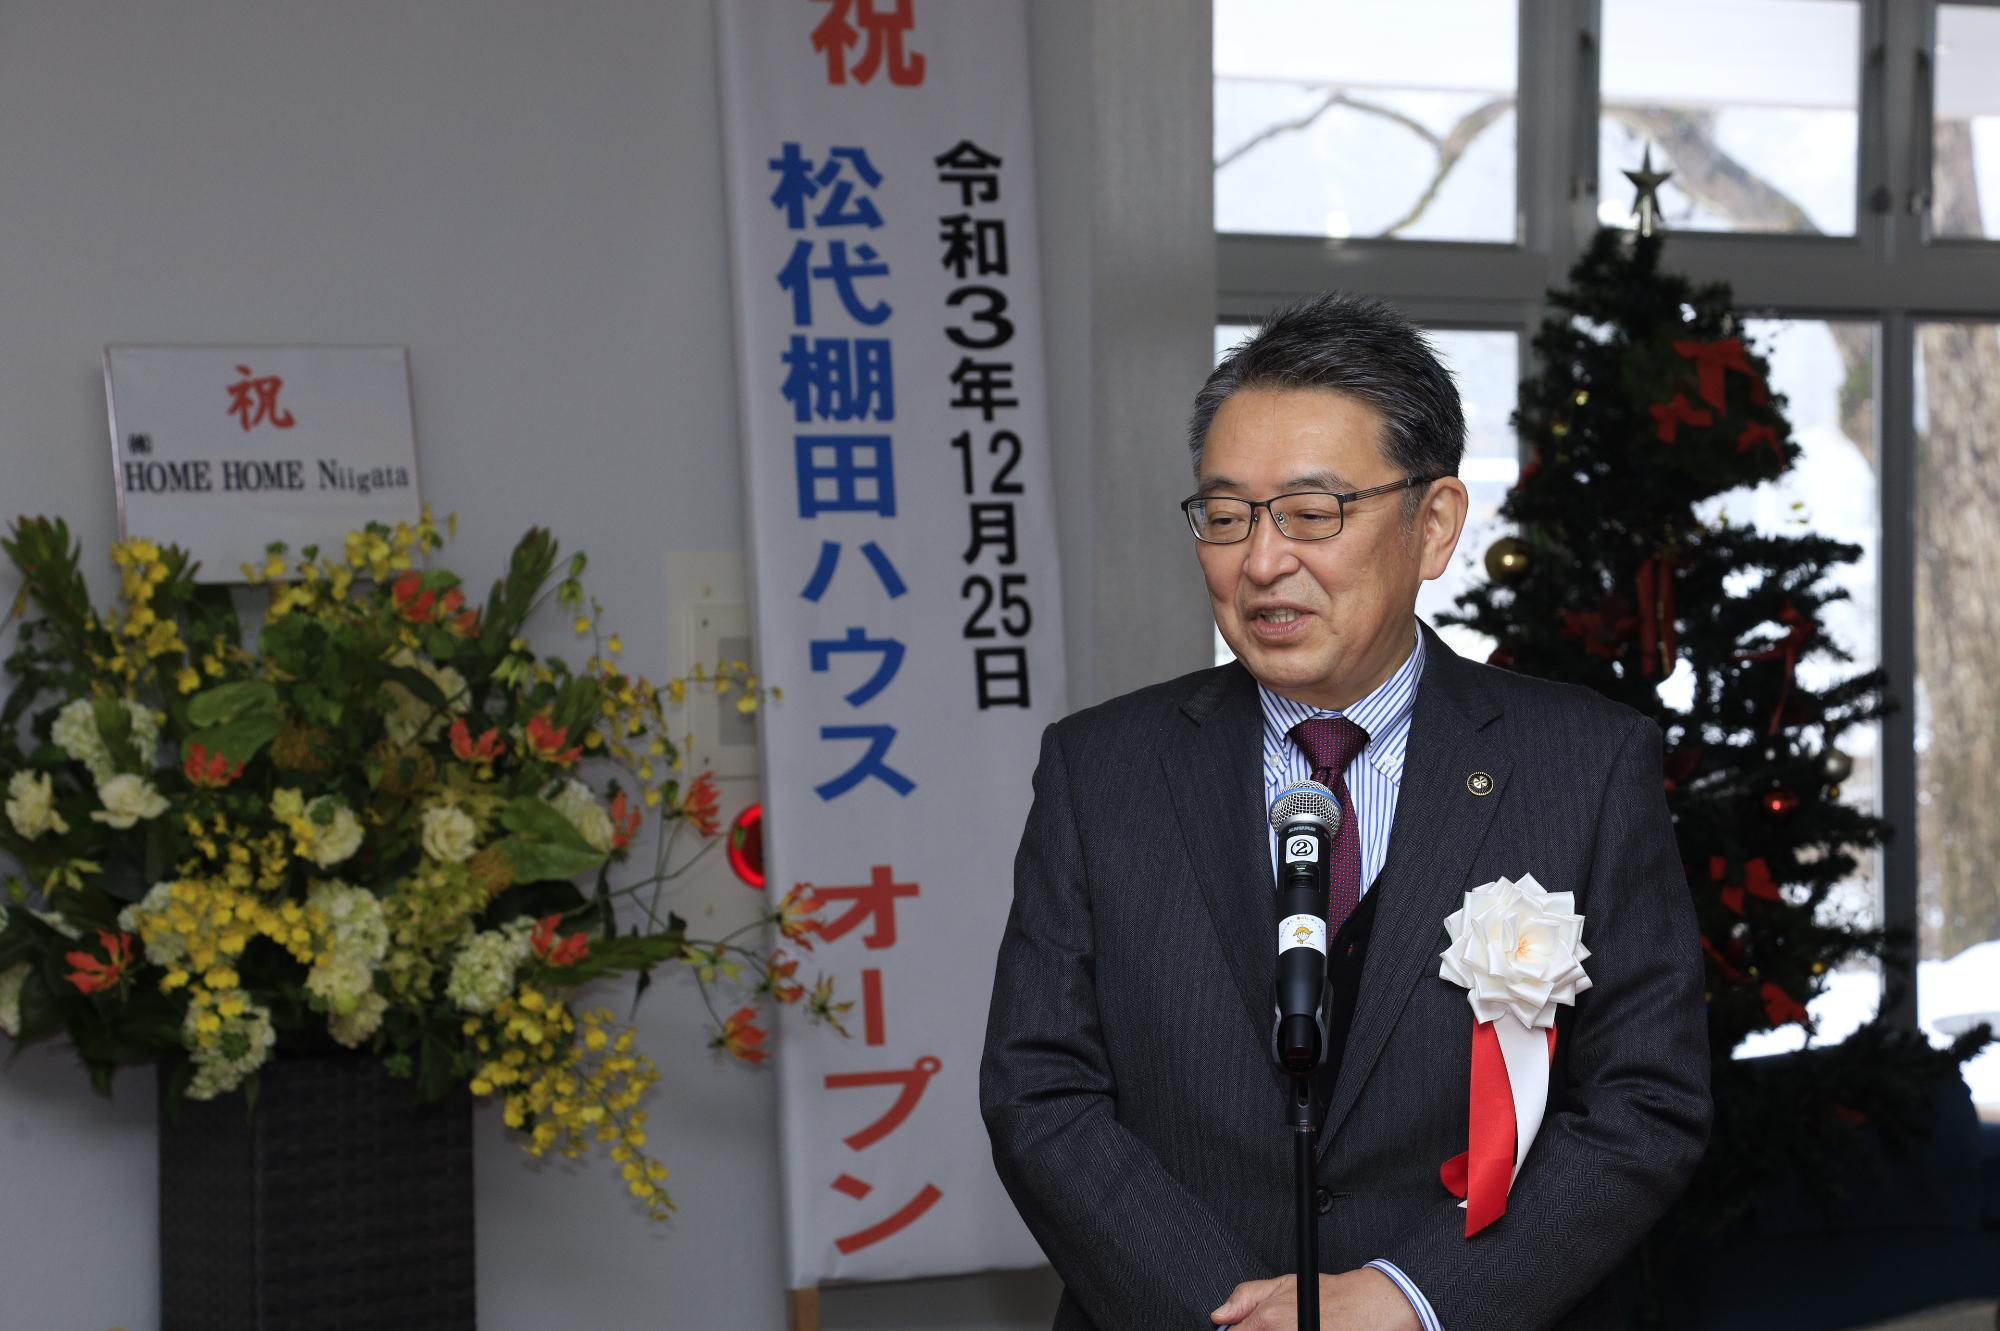 松代棚田ハウスオープニングセレモニーで挨拶する市長の写真